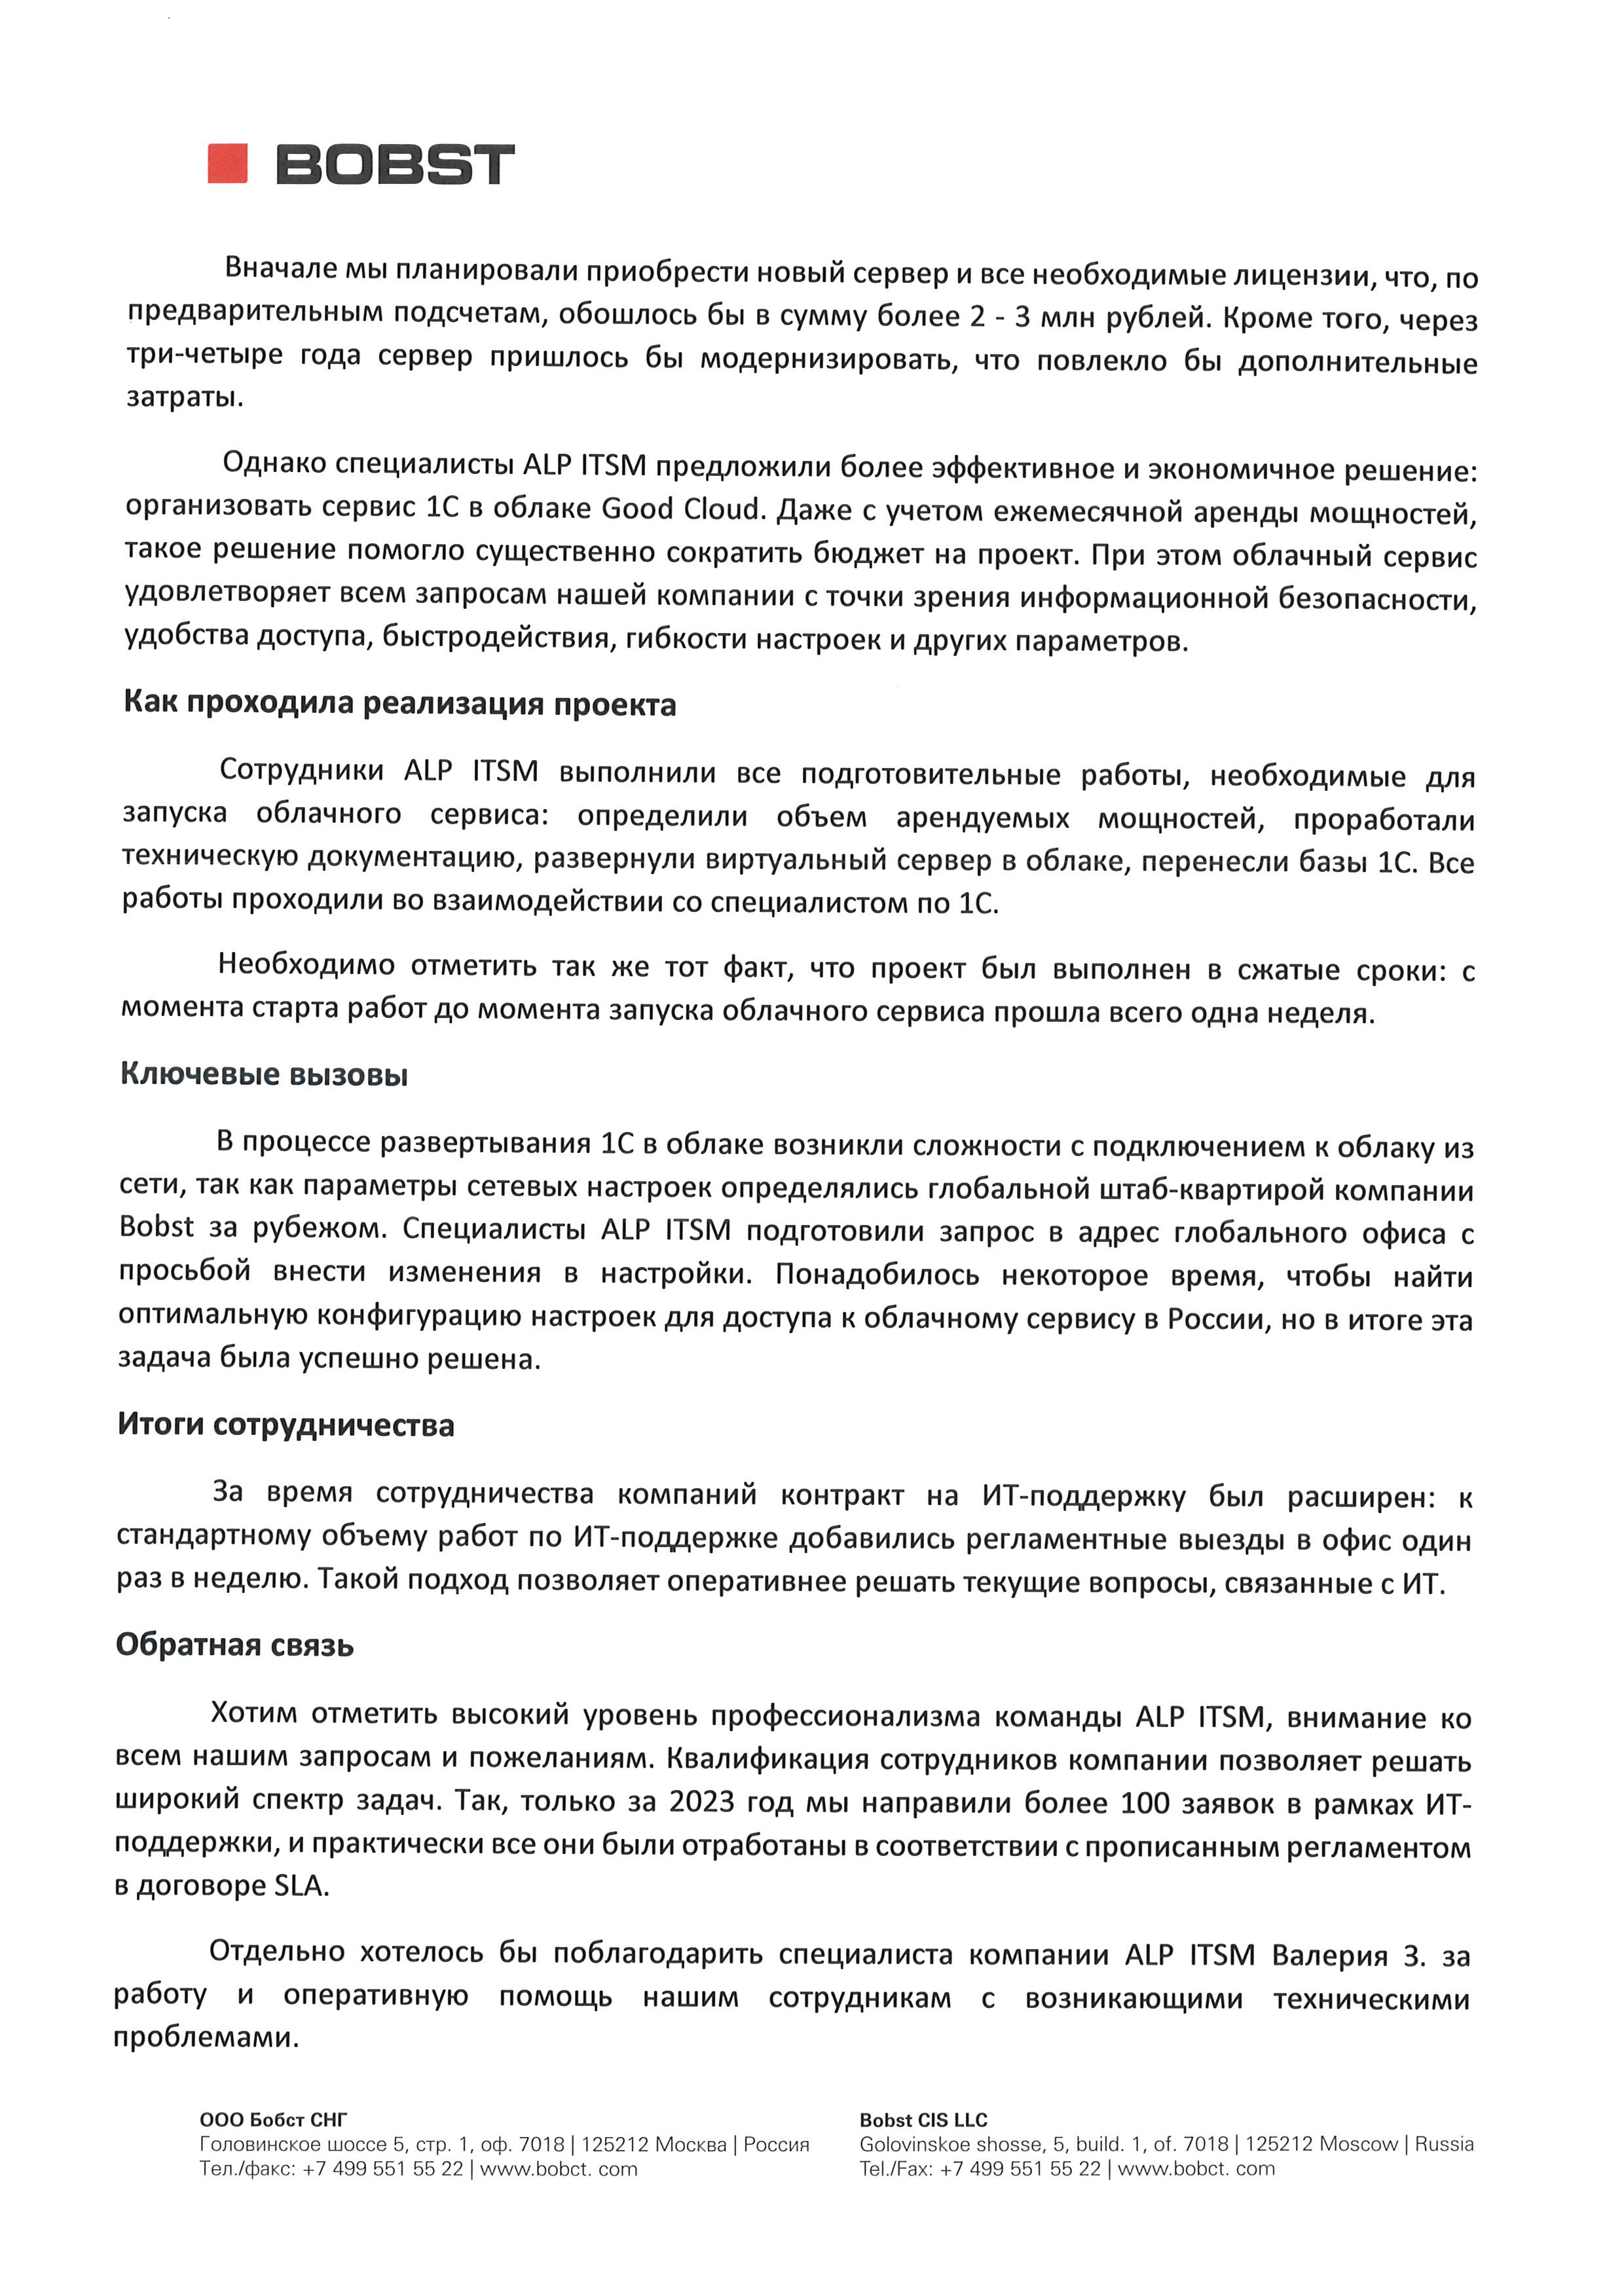 ИТ-сопровождение и проект по организации облачного сервиса 1С для российского подразделения швейцарской компании BOBST страница 2